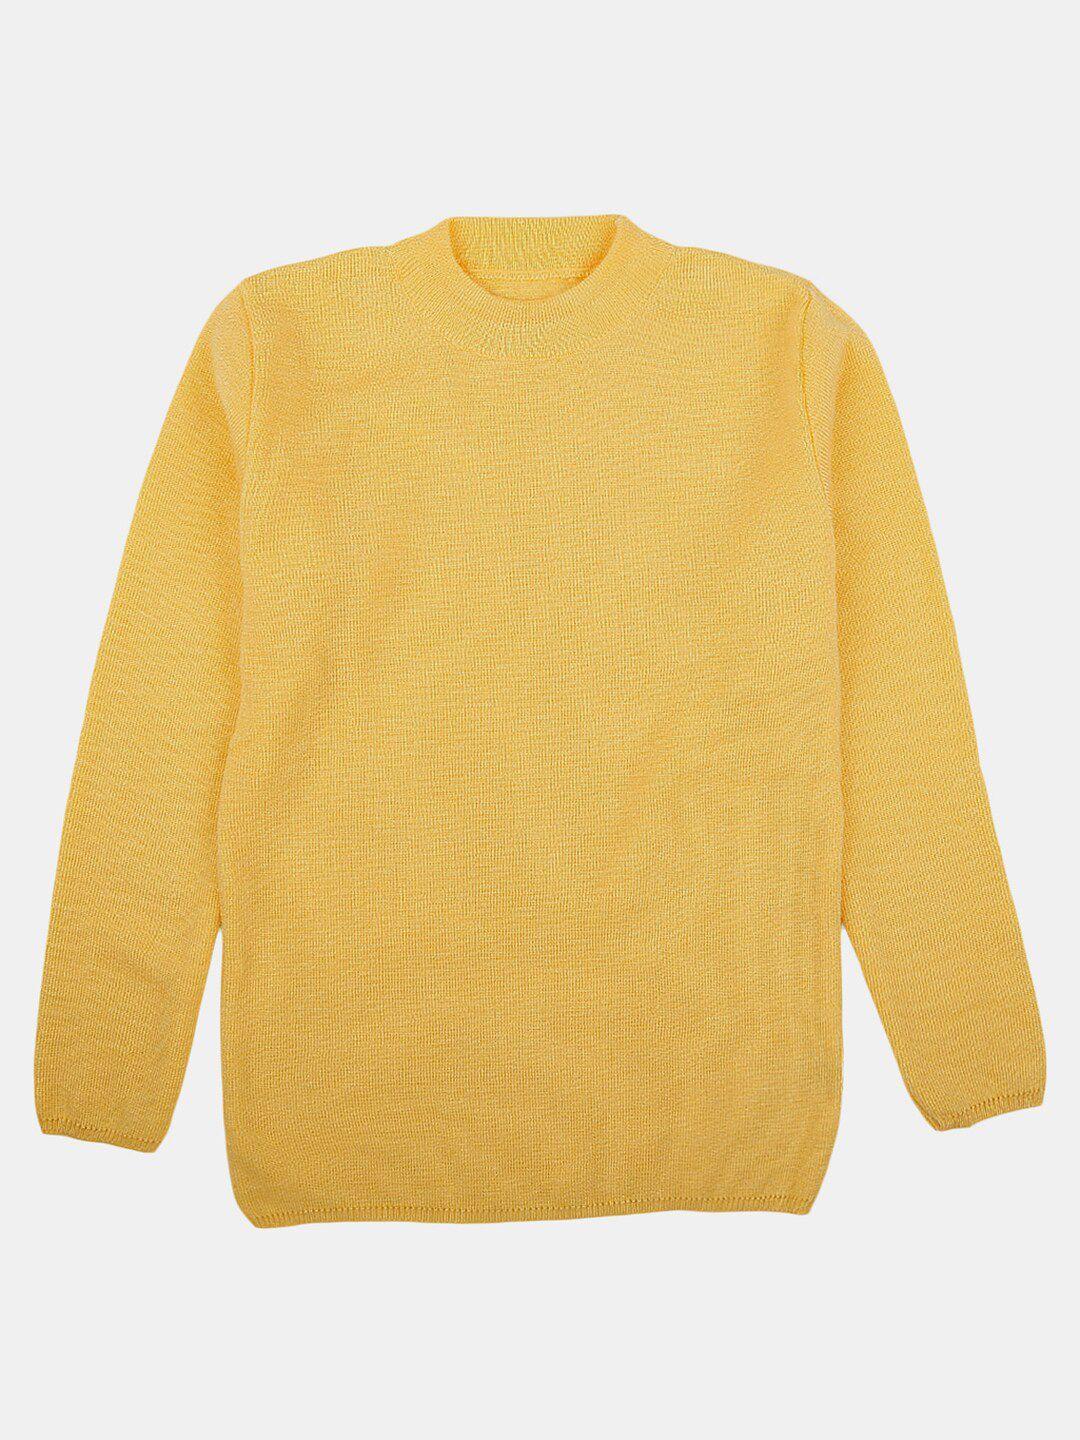 v-mart boys fleece pullover sweatshirt